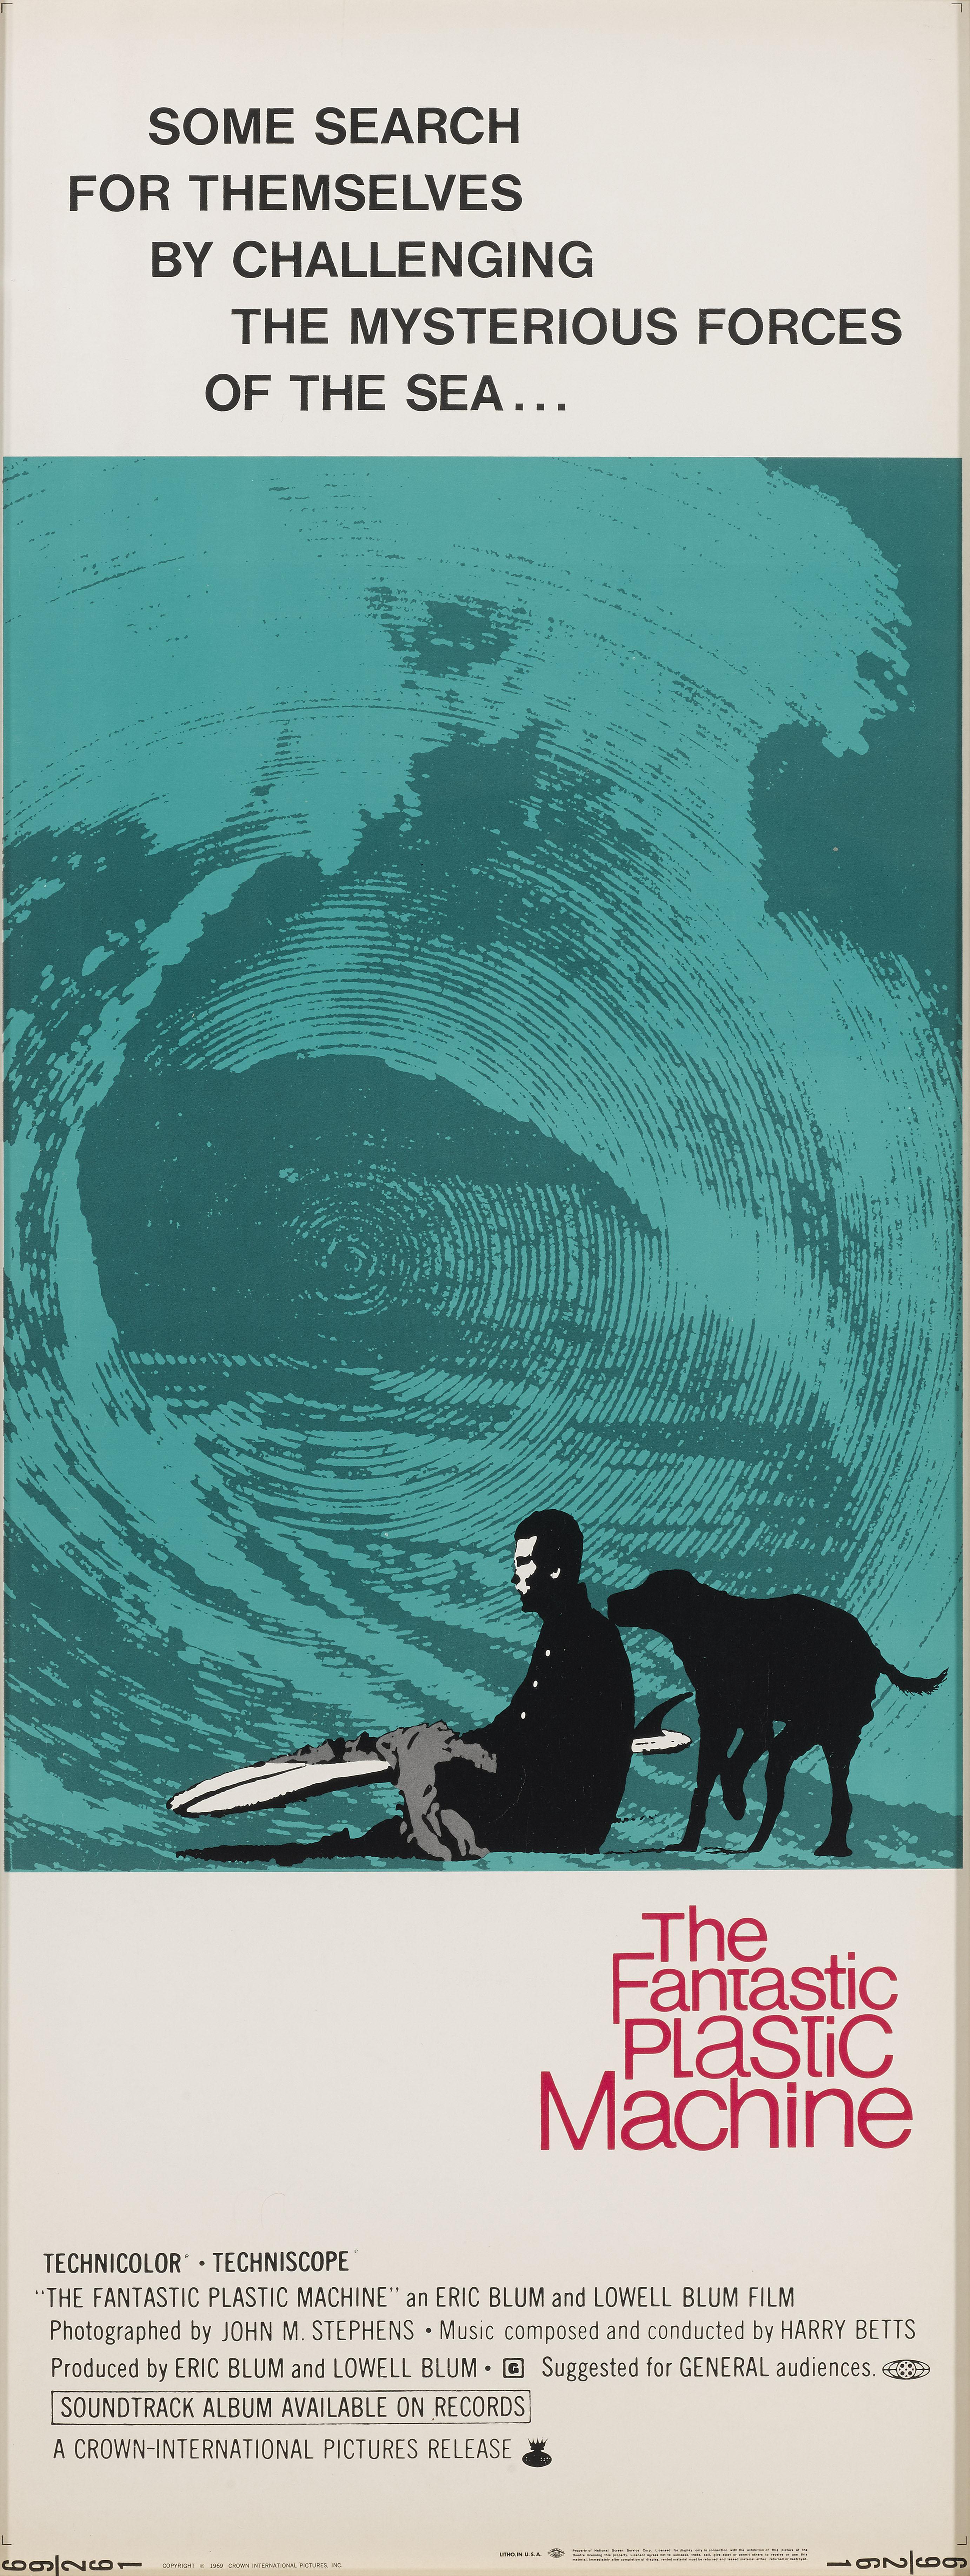 Original US-Filmplakat für den Dokumentarfilm von 1969 über eine Gruppe von Surfern.
In diesem Film spielten Skip Frye, Mike Purpus und Steve Bigler die Hauptrollen. Die Regie wurde von Eric Blum und Lowell Blum geführt.
Dieses Poster ist entfaltet